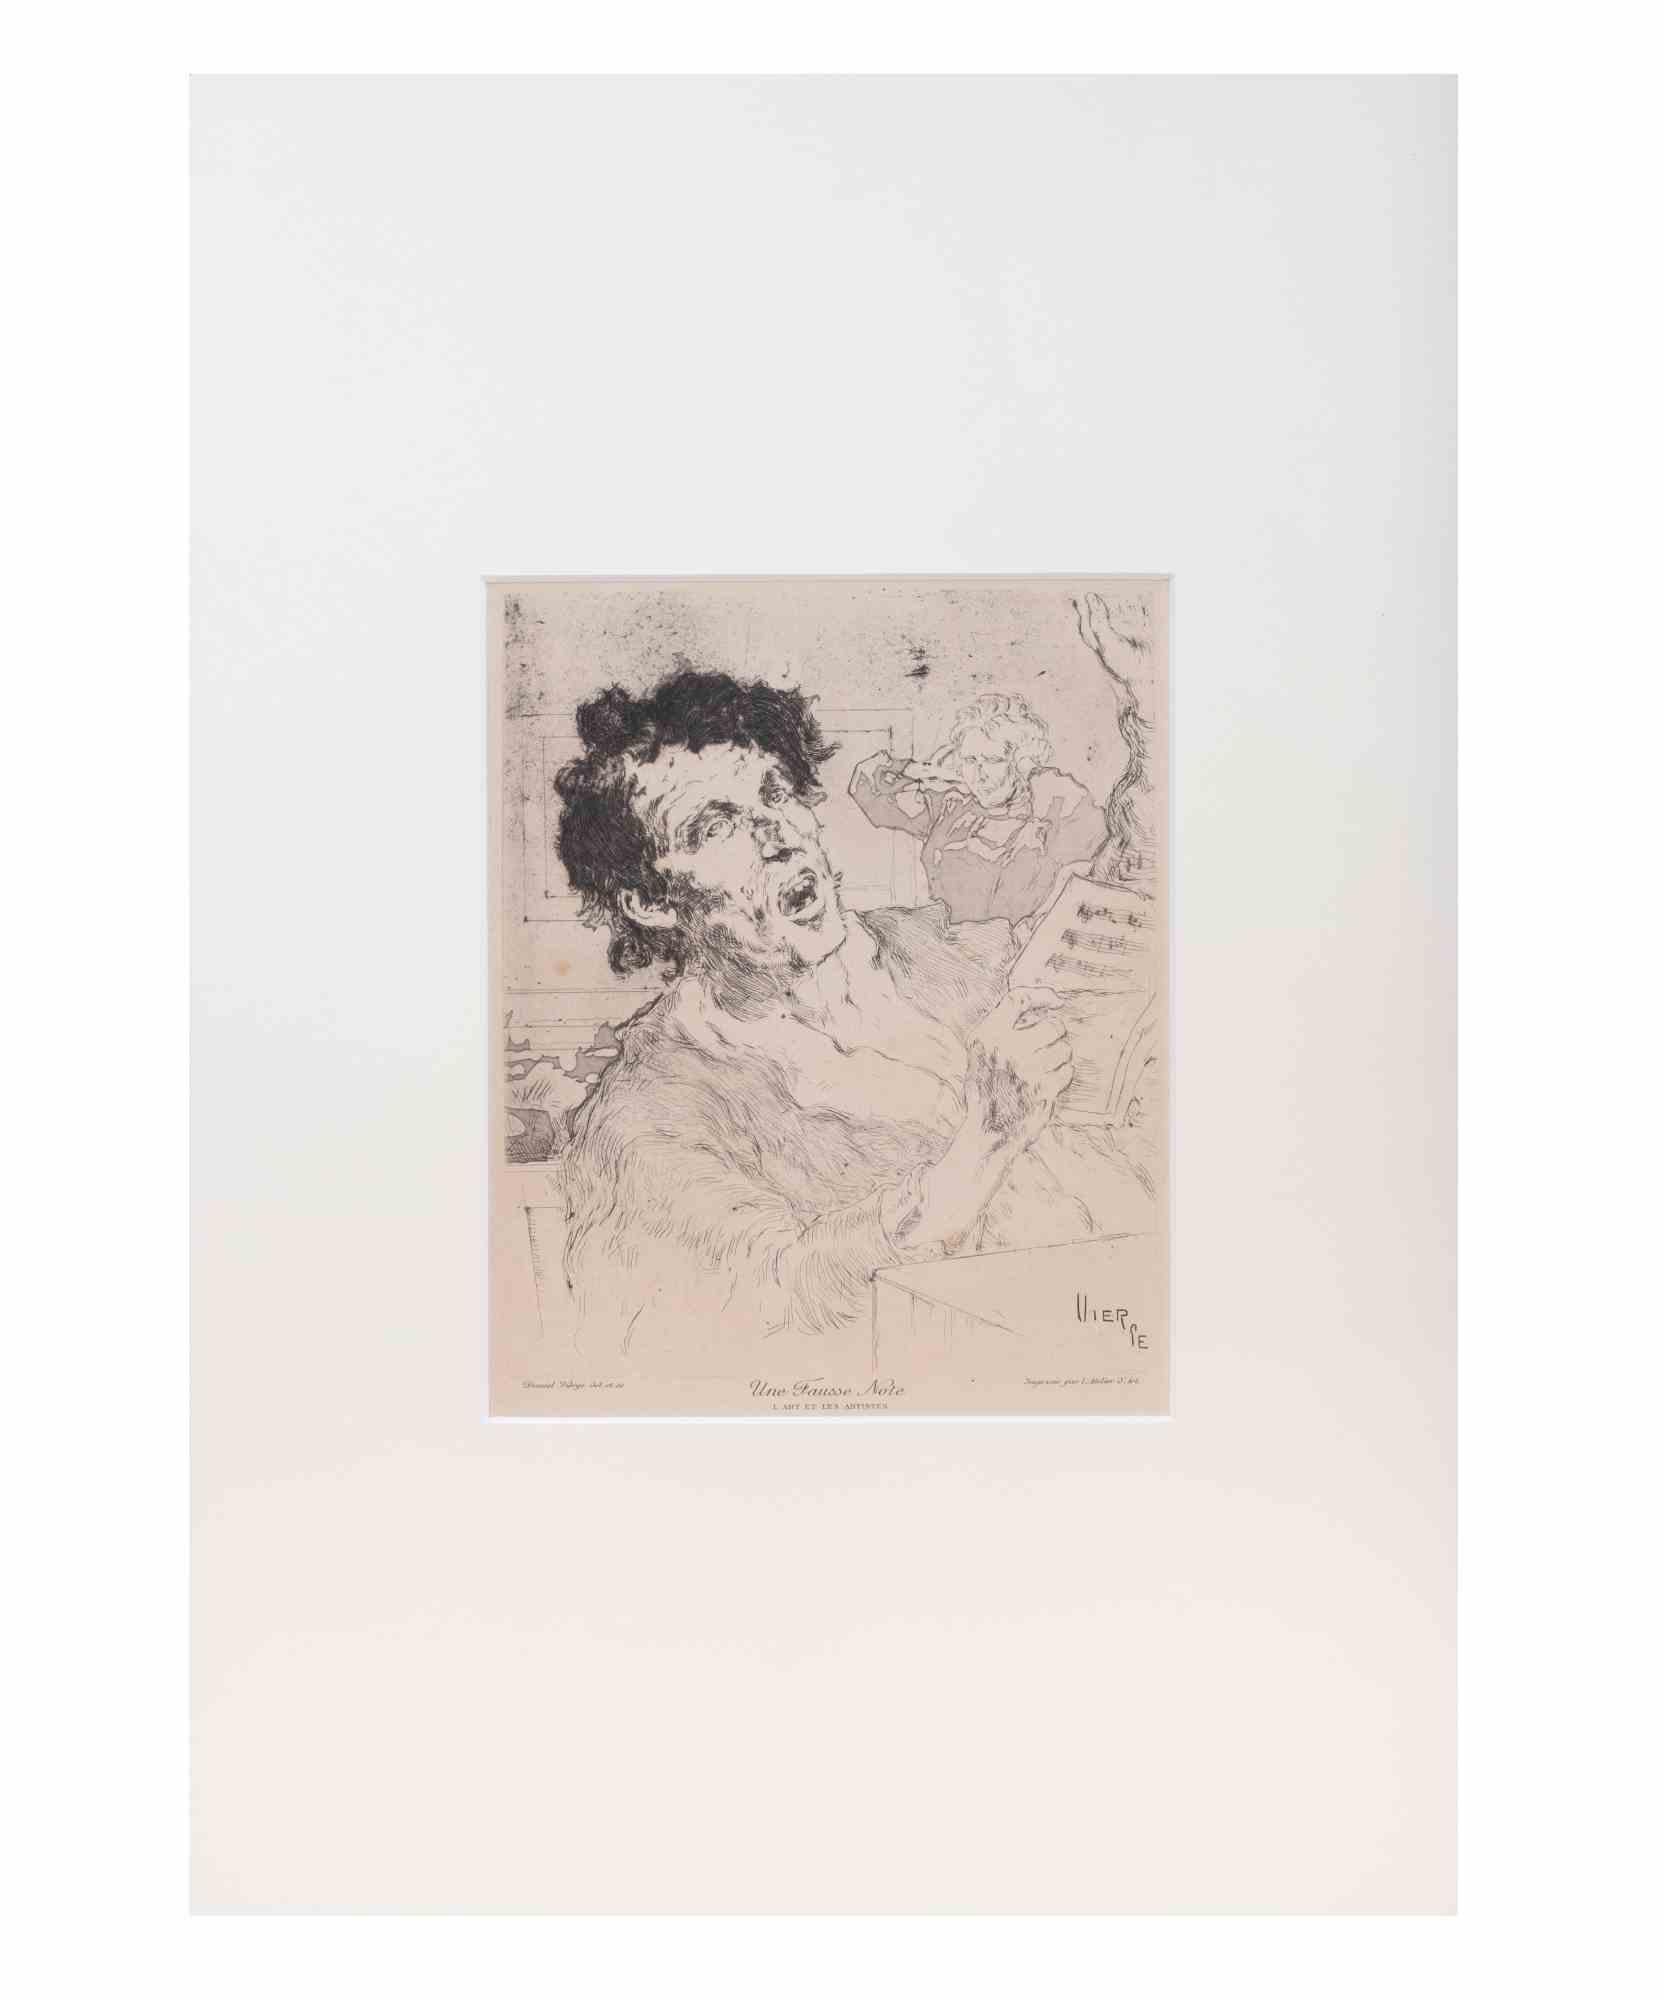 Une Fausse Note ist ein modernes Kunstwerk von Daniel Vierge aus dem späten 19.

Radierung in Schwarz und Weiß. In der Platte signiert.

Das Kunstwerk stammt aus der Zeitschrift "L'Art et les Artistes".

Passepartout inklusive. Gute Bedingungen.